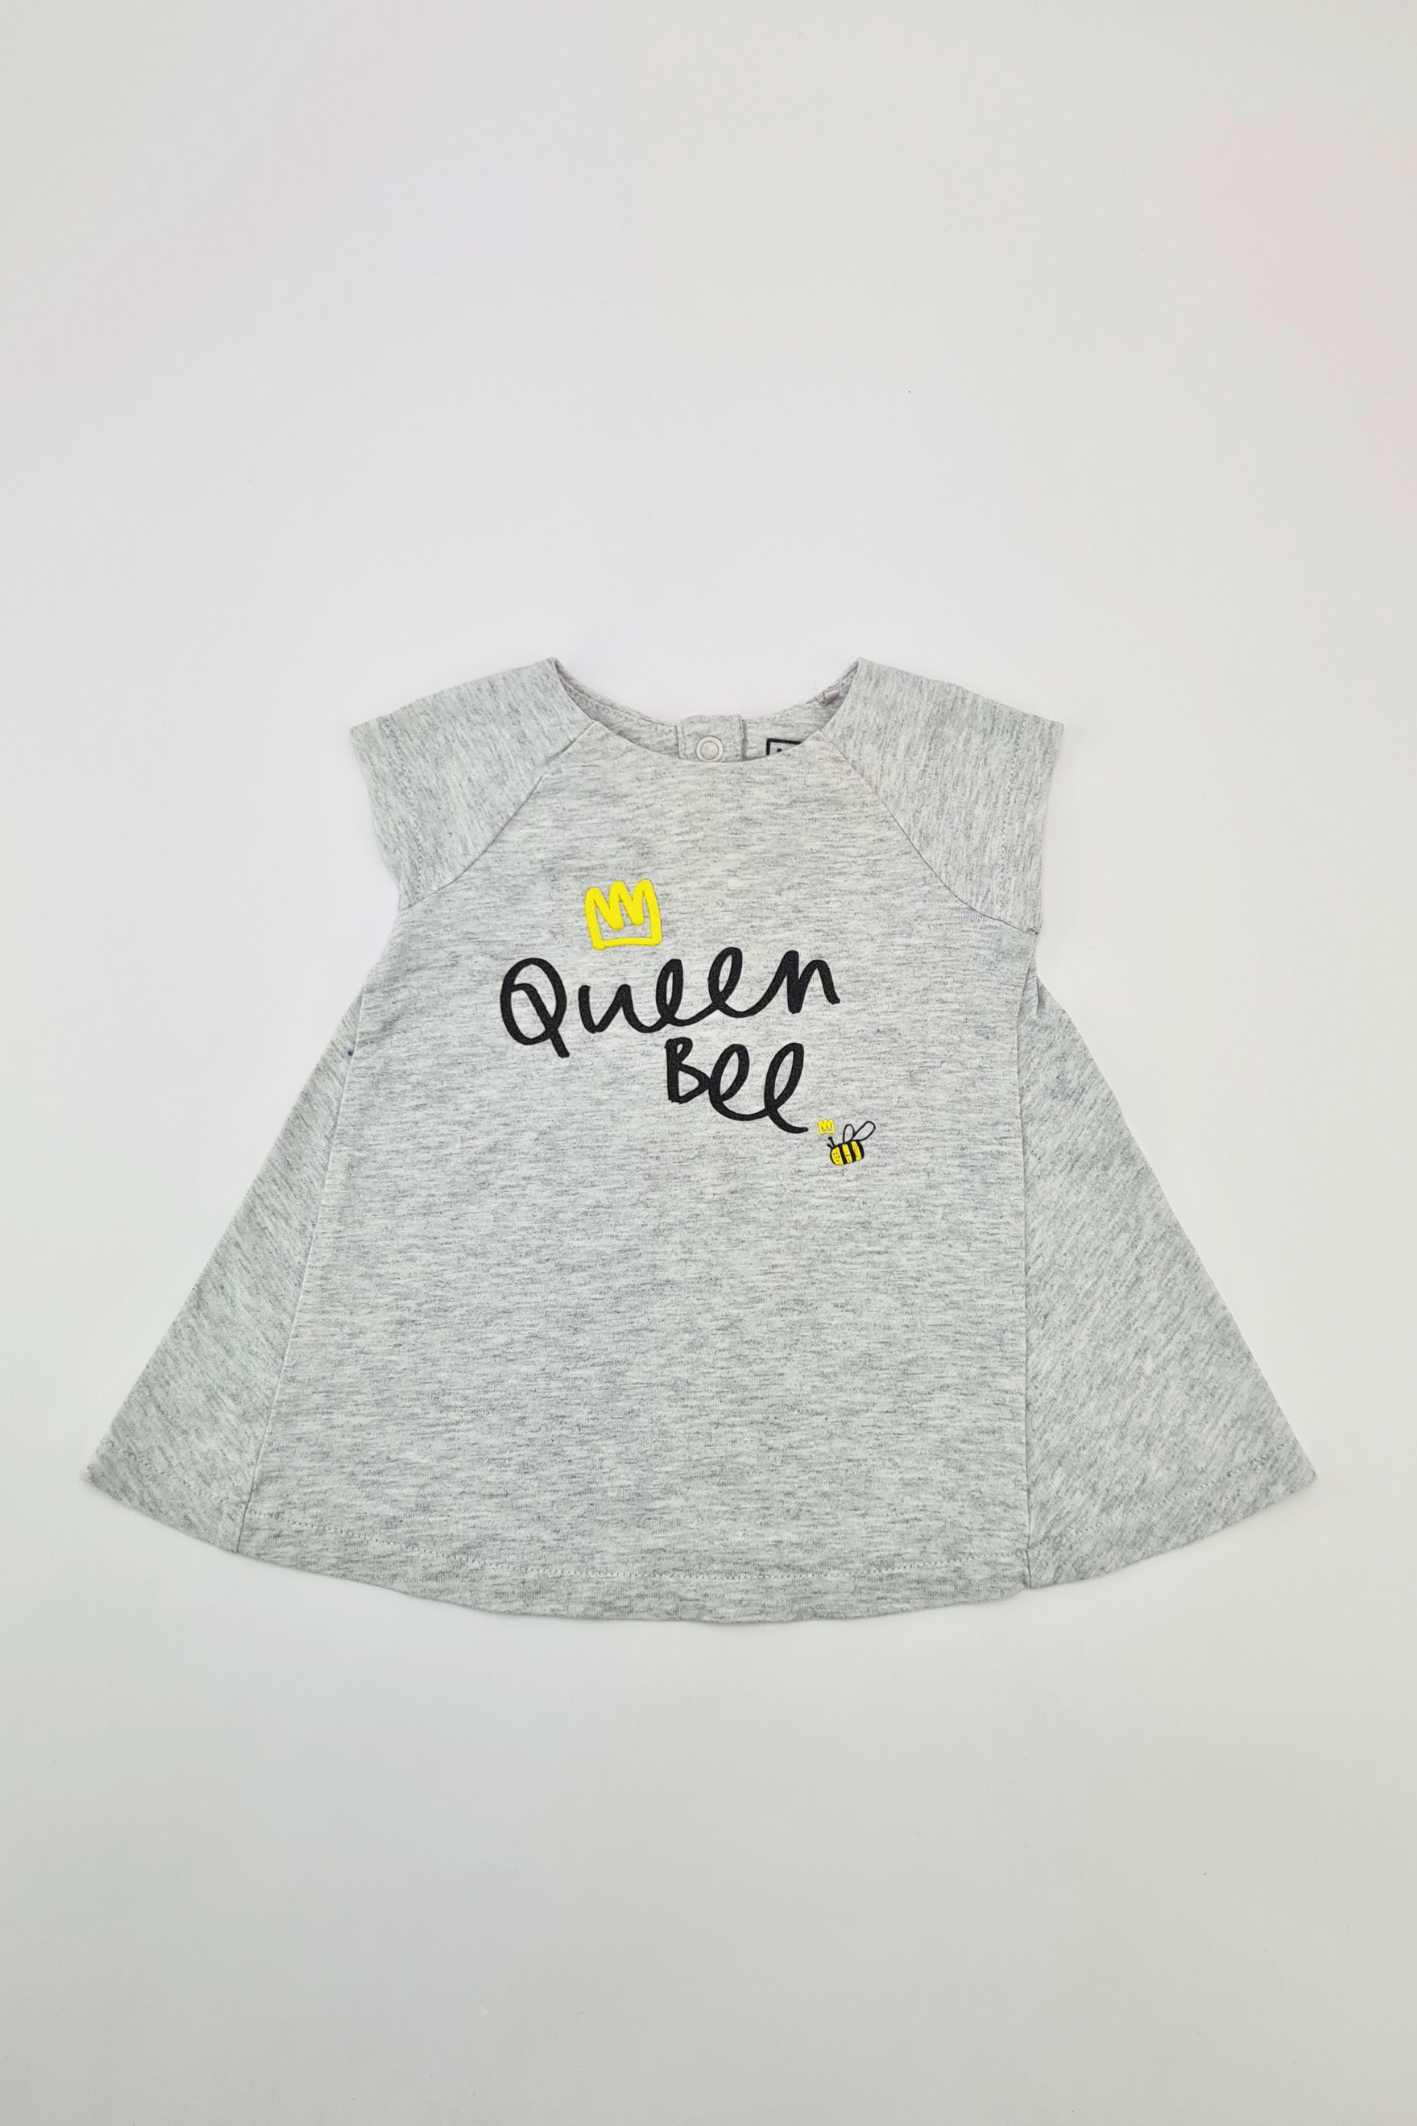 Newborn - 10lbs 'My Queen Bee' Grey Dress (My K)